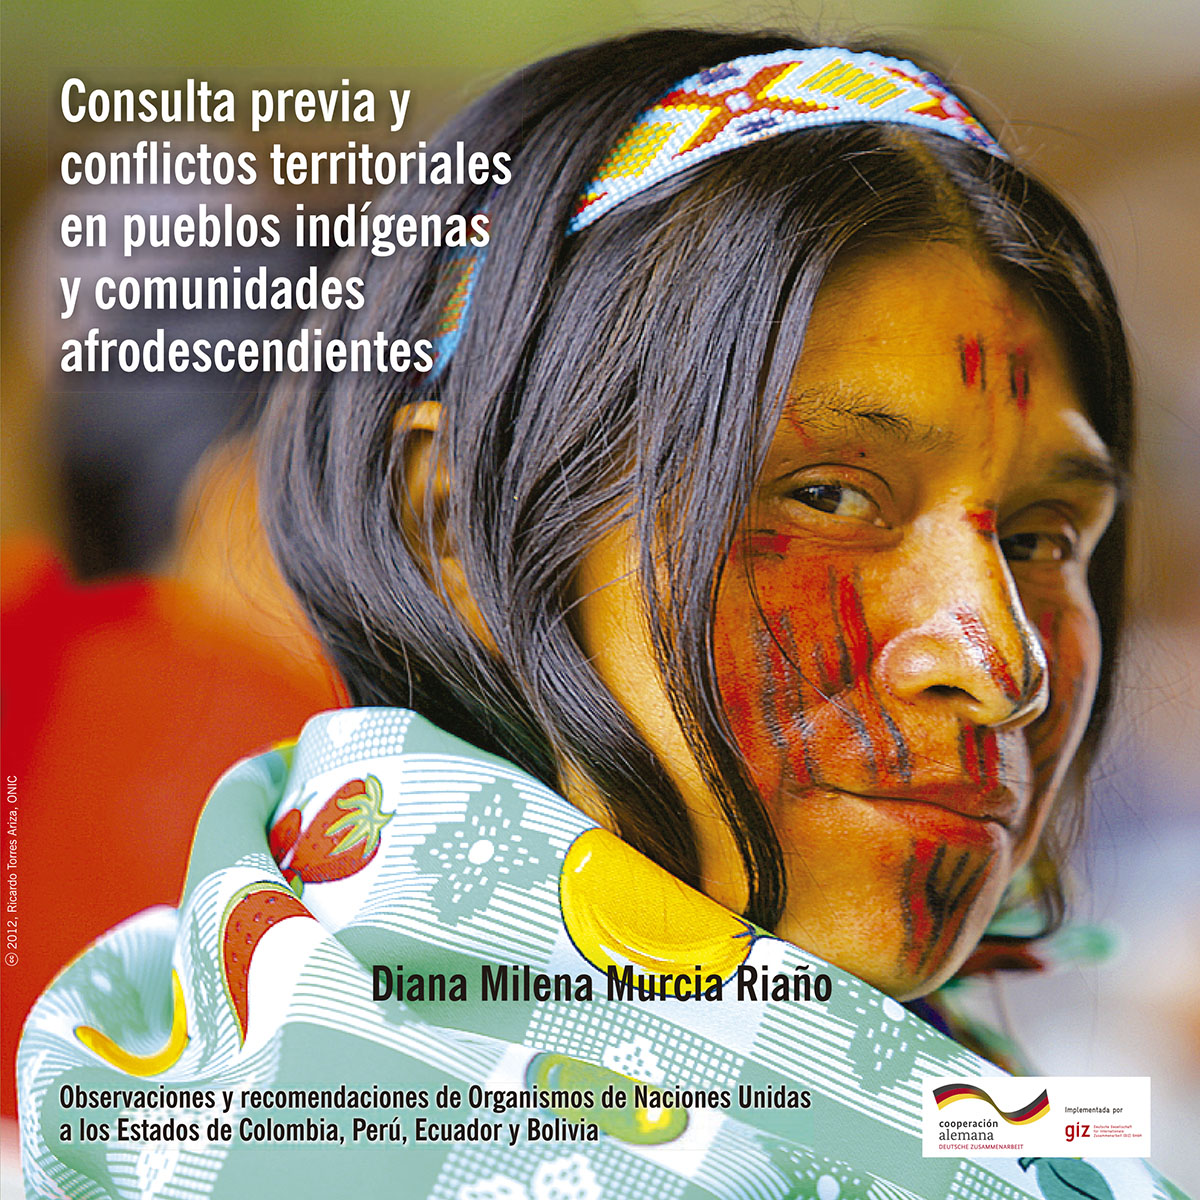 Consulta previa y conflictos territoriales en pueblos indígenas y comunidades afrodescendientes